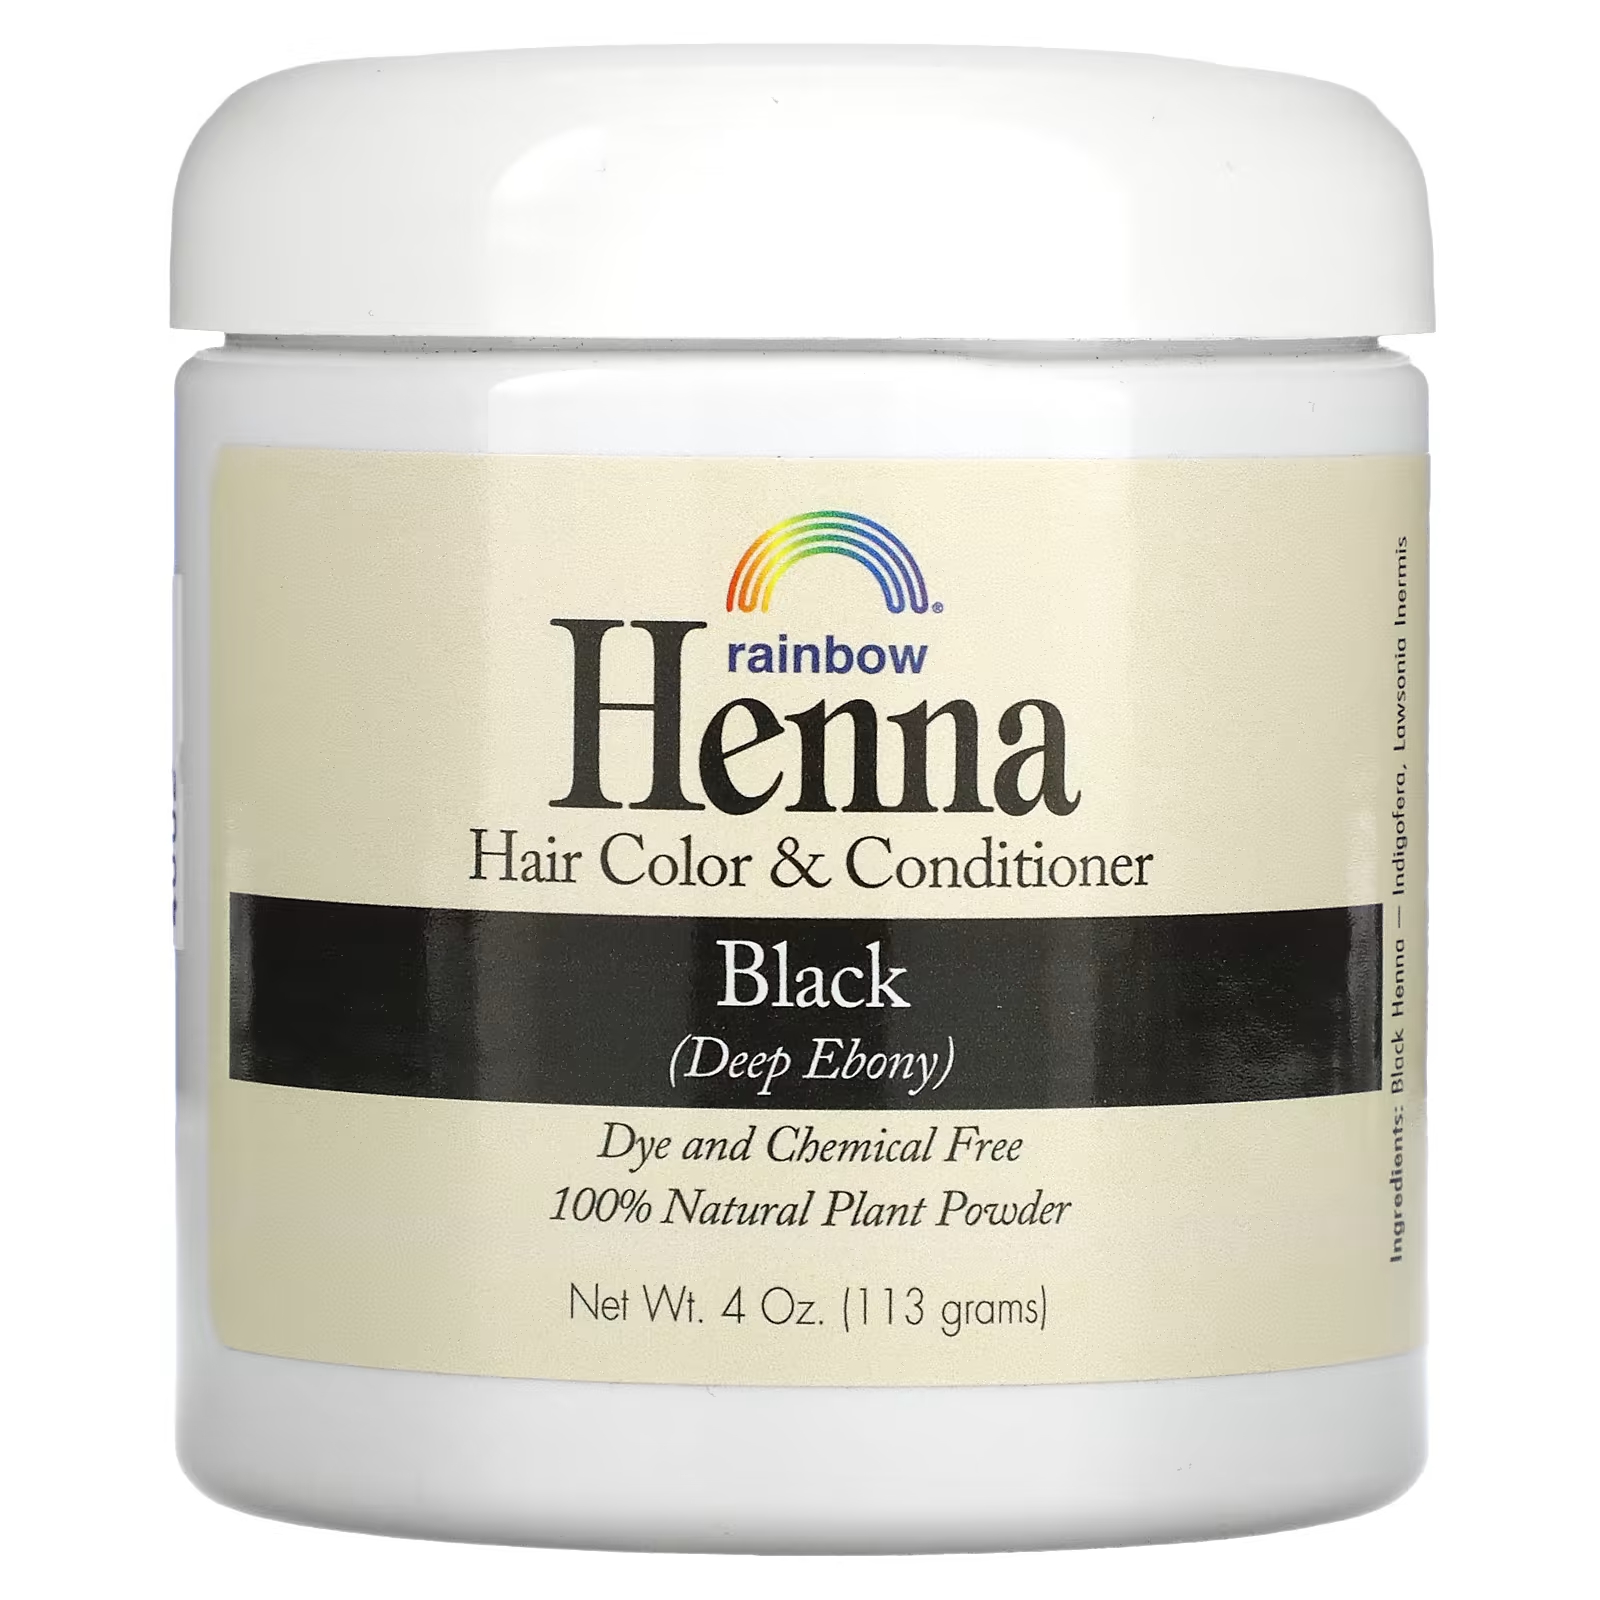 Краска и кондиционер Rainbow Research Henna для волос, черный rainbow research henna 100% растительная краска для волос и кондиционер персидский блонд 4 унции 113 г в форме порошка